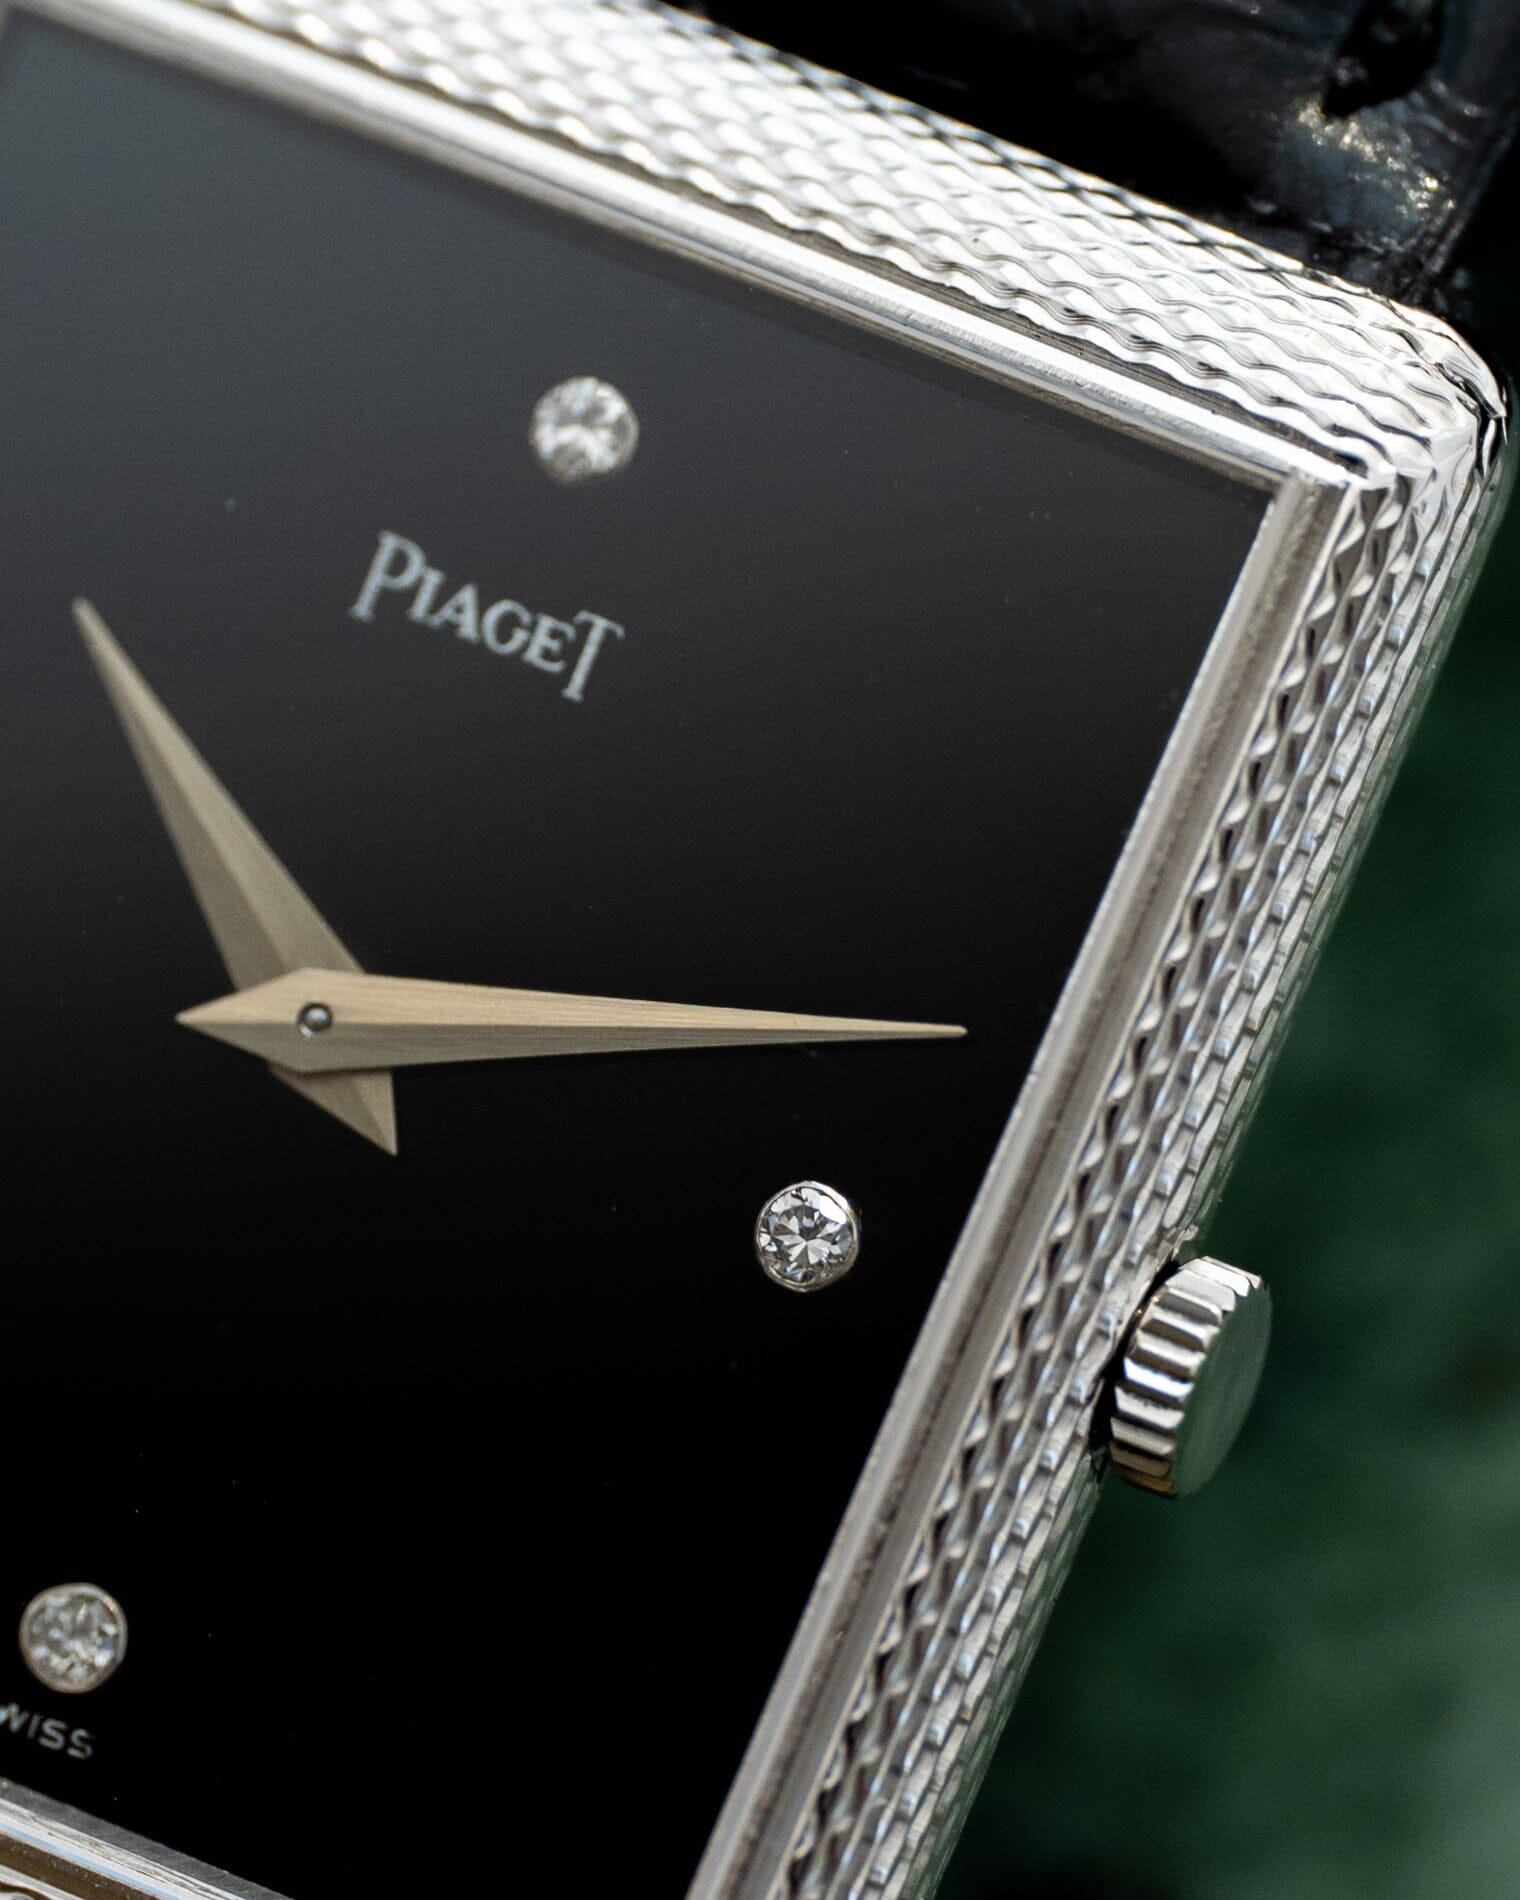 Piaget レクタングル 9152 WG オニキスダイアル 4Pダイヤモンド Watch PIAGET 